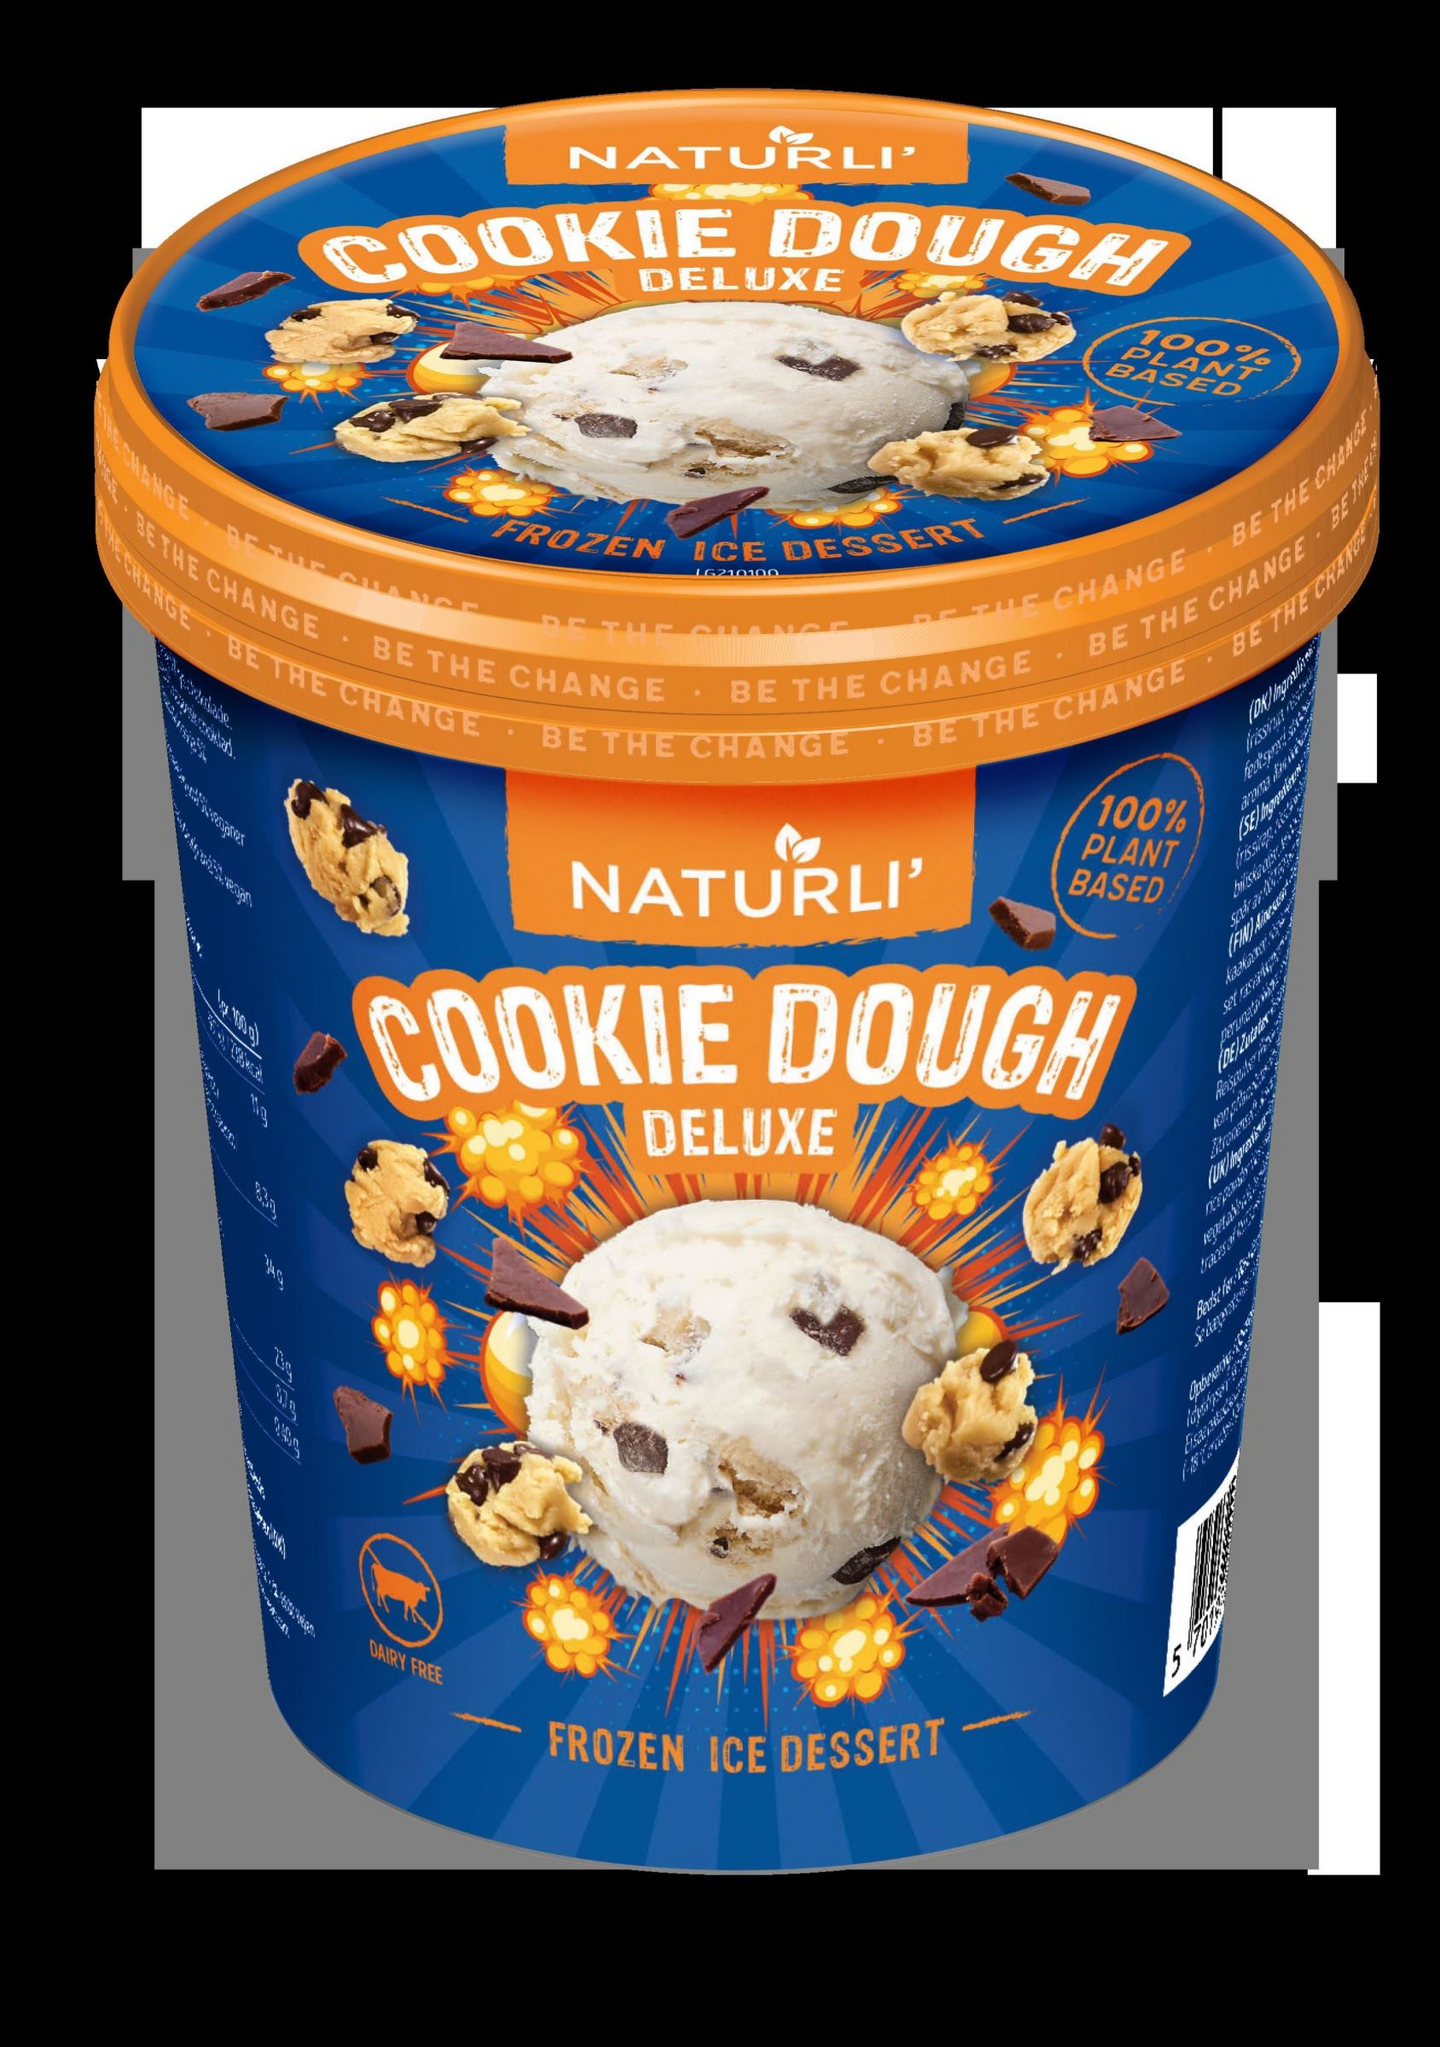 Naturli' cookie dough vegaaninen jäätelö 480ml/320g